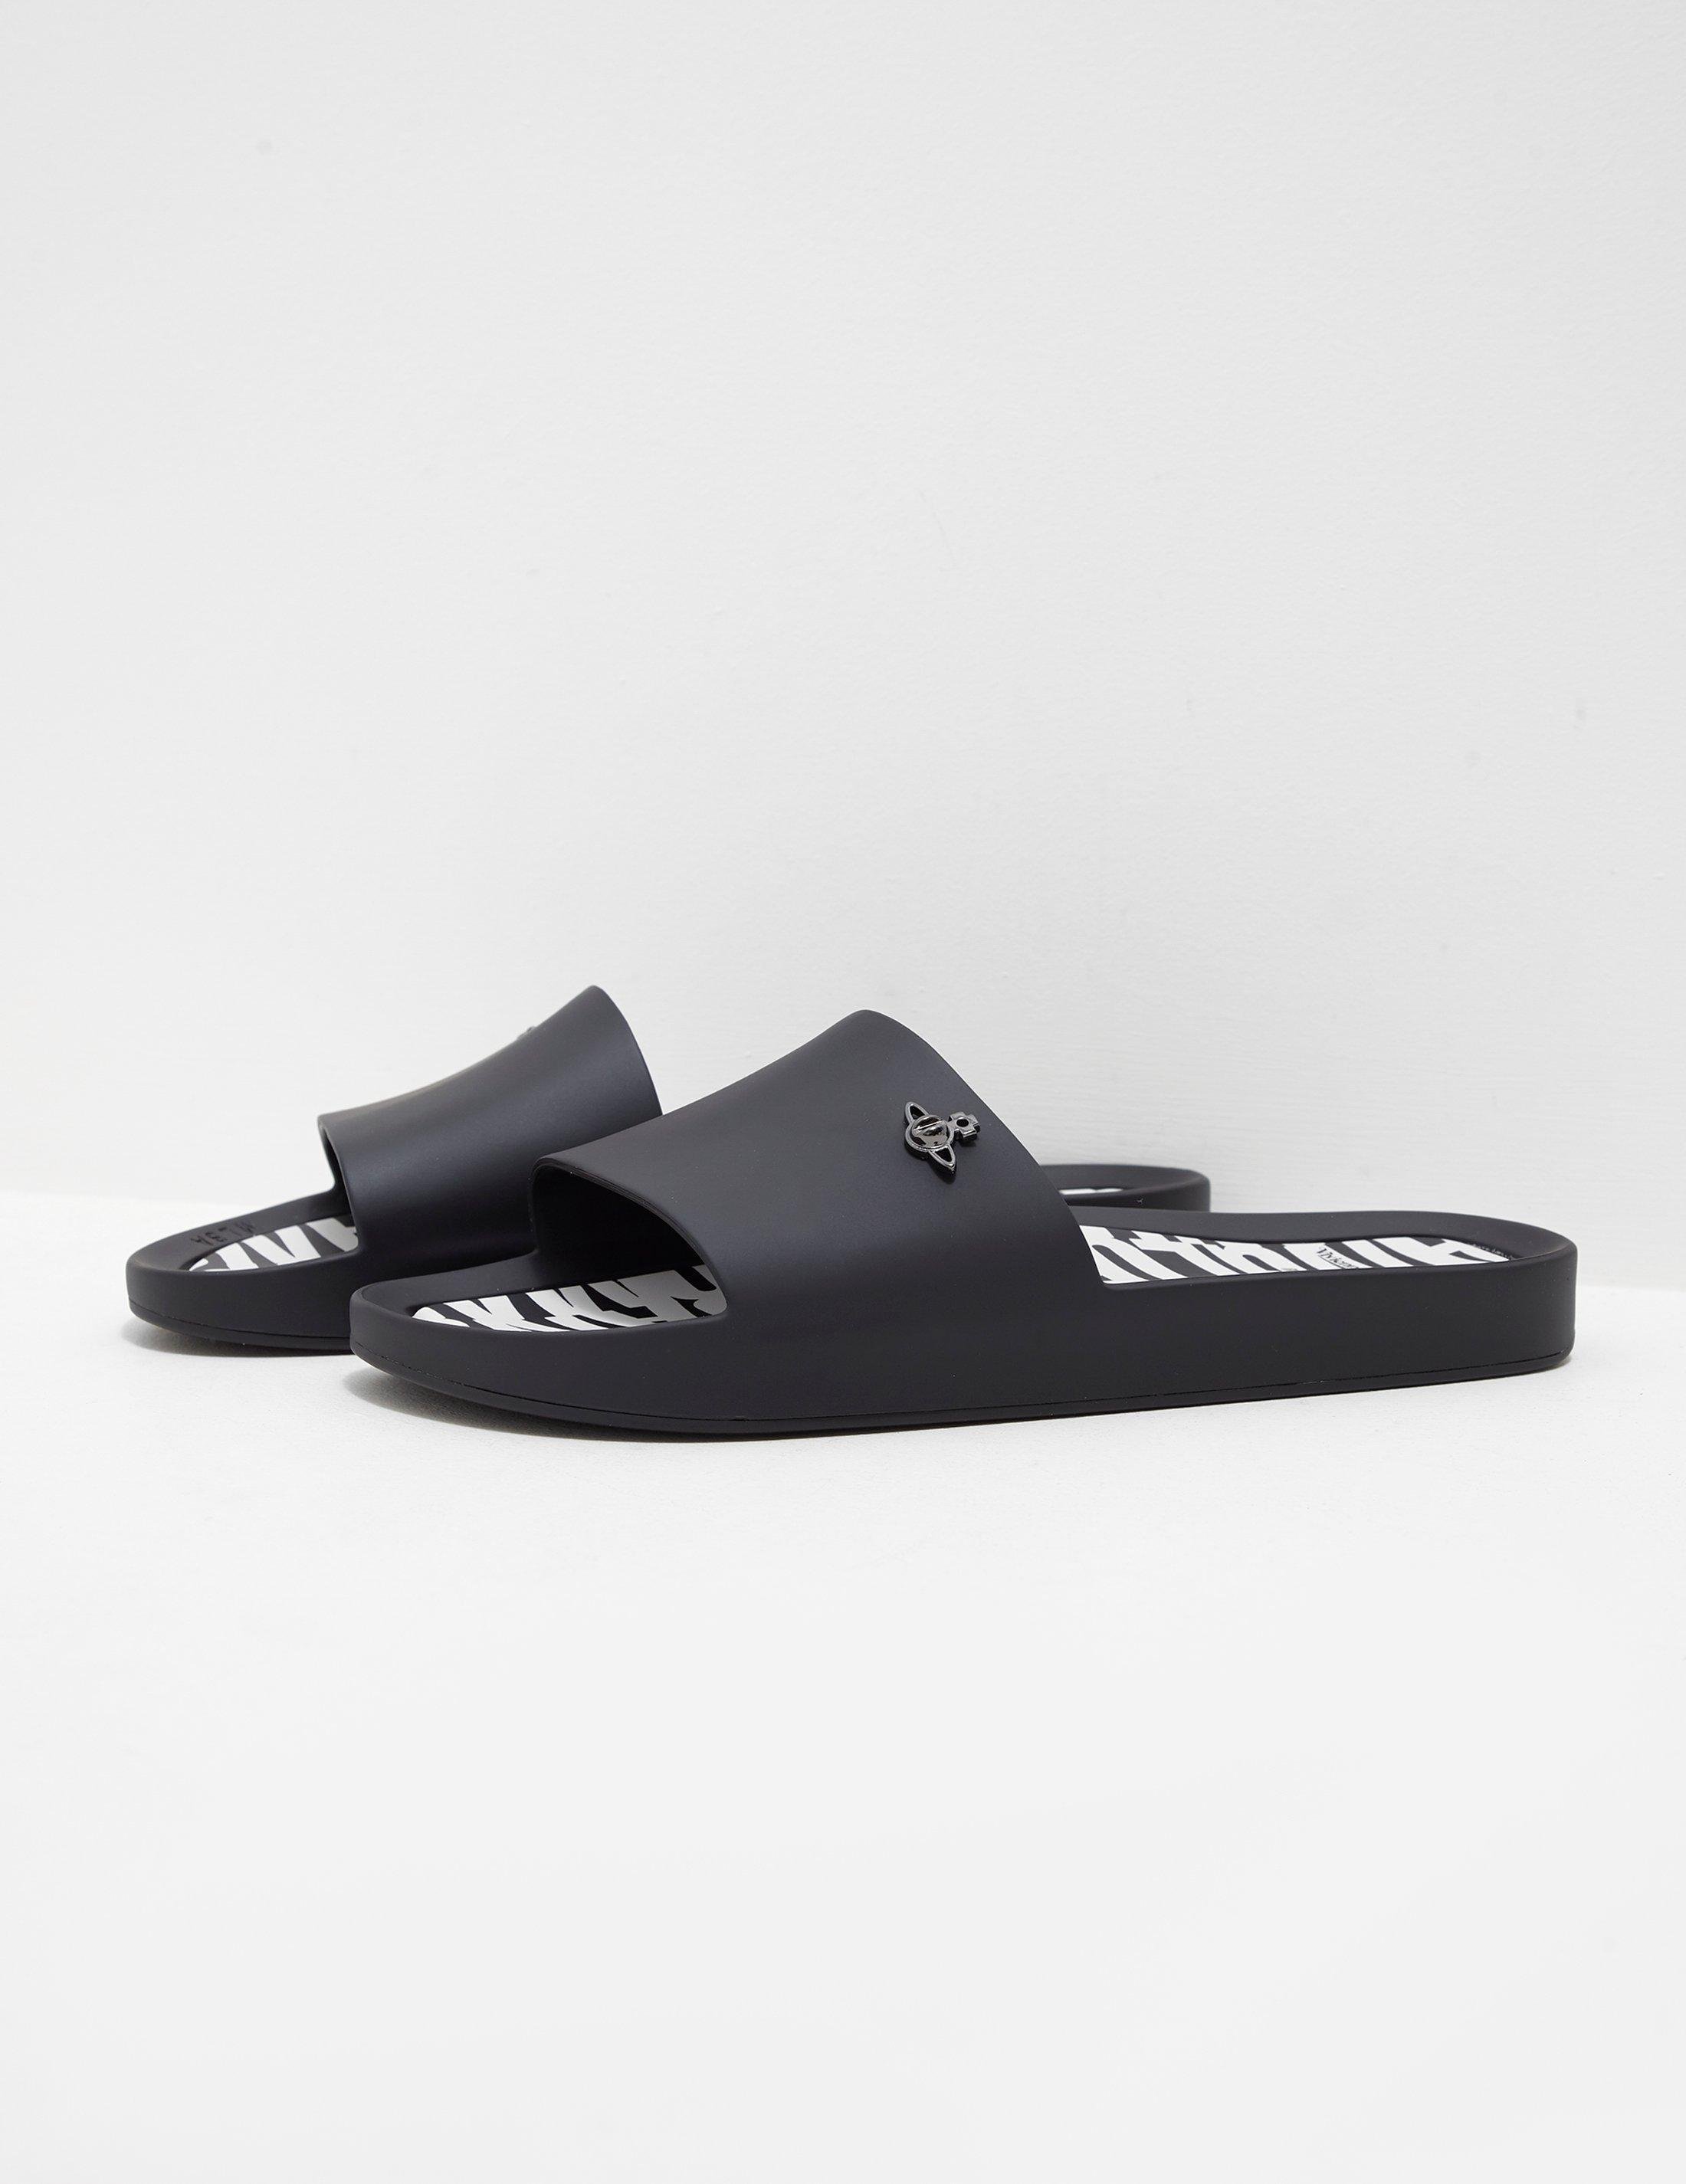 h&m slide sandals